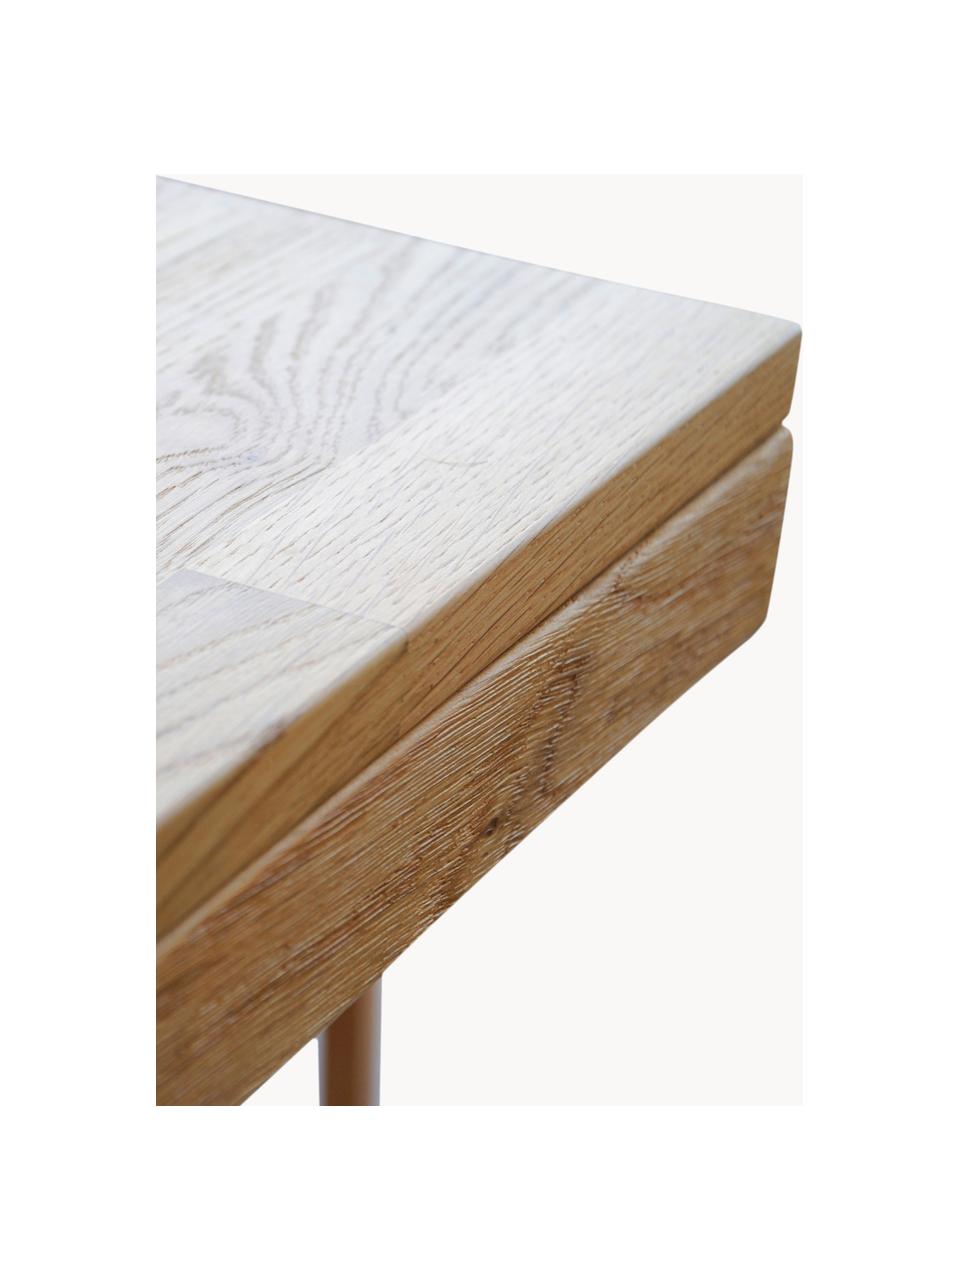 Ausziehbarer Esstisch Brooklyn aus Eichenholz, in verschiedenen Größen, Massives Eichenholz, gebürstet und klar lackiert

Dieses Produkt wird aus nachhaltig gewonnenem, FSC®-zertifiziertem Holz gefertigt., Eichenholz, B 170/220 x T 95 cm